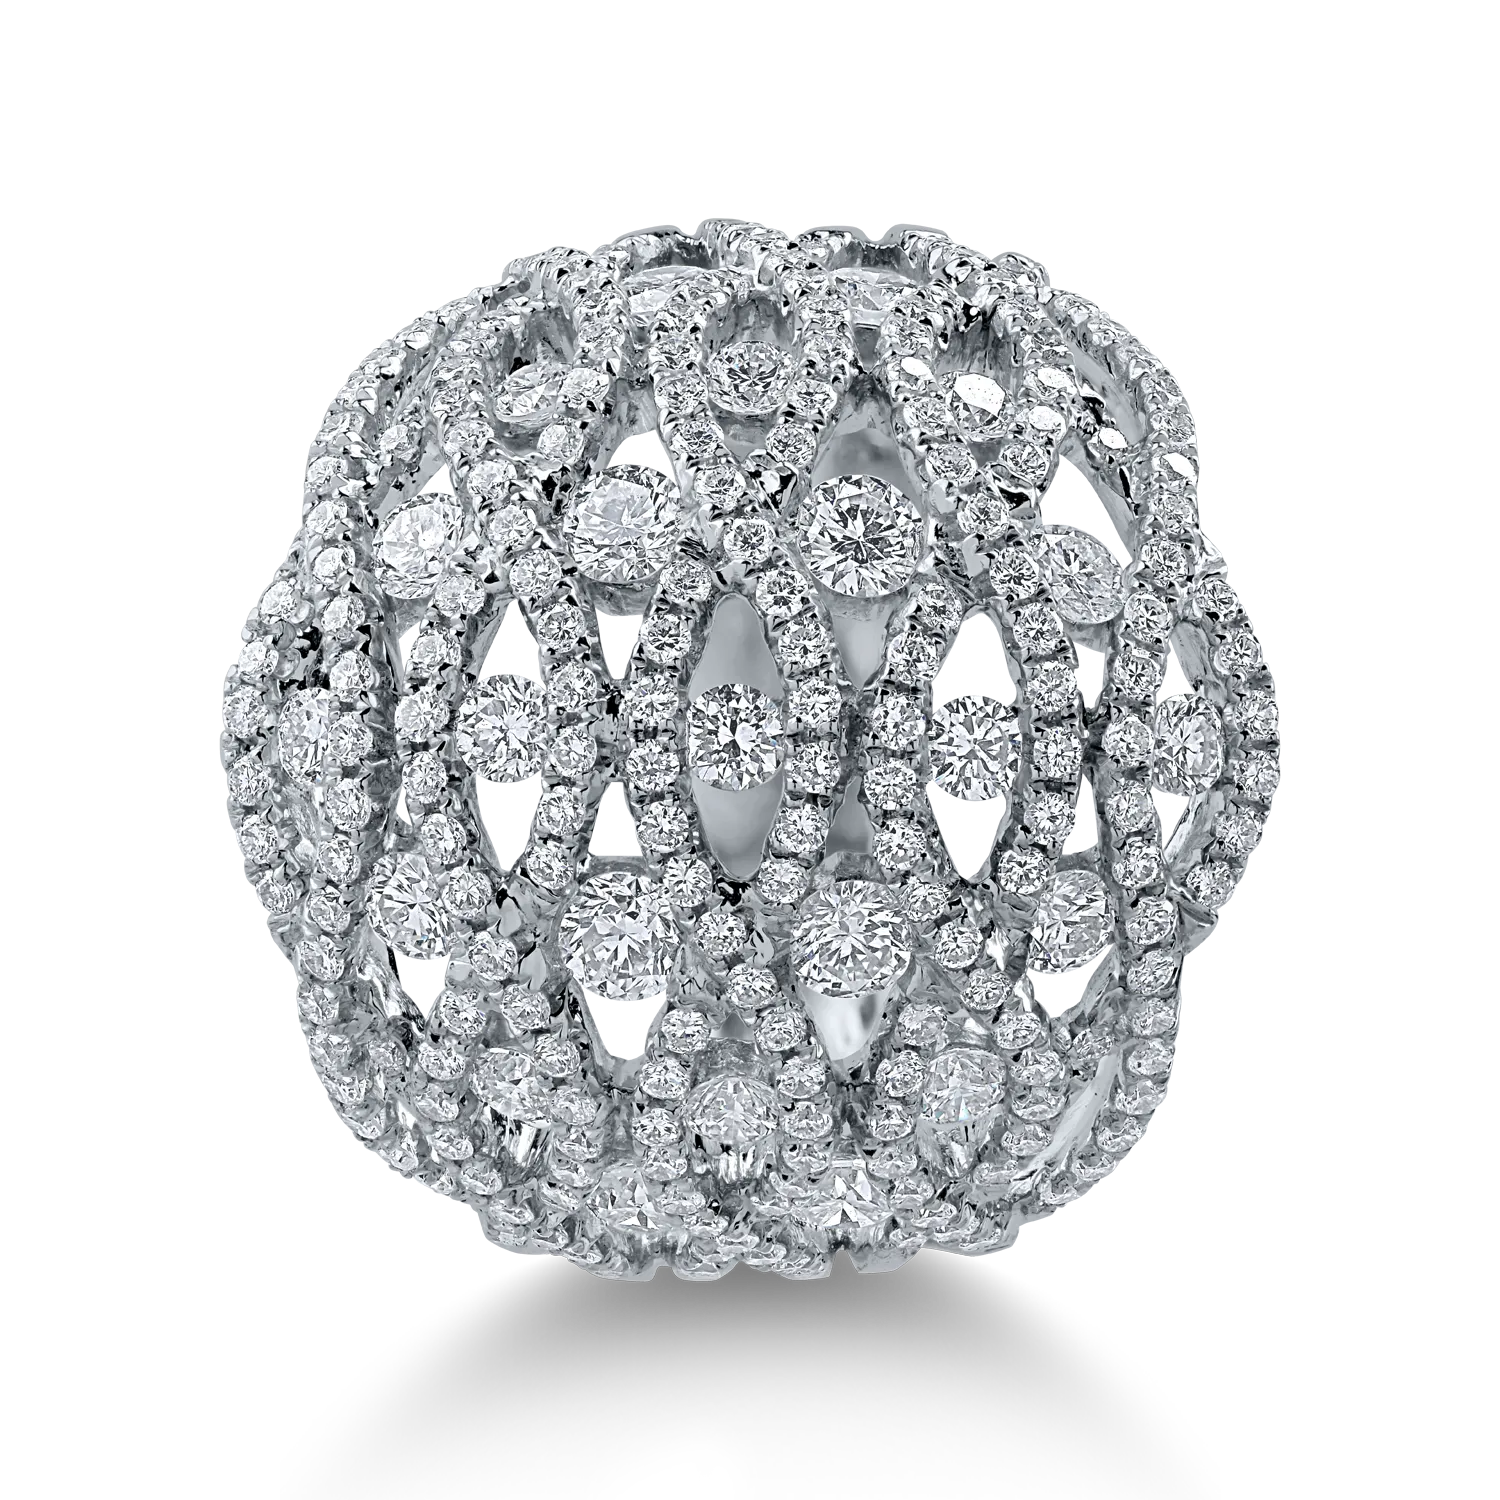 Fehérarany gyűrű 2.5ct gyémántokkal